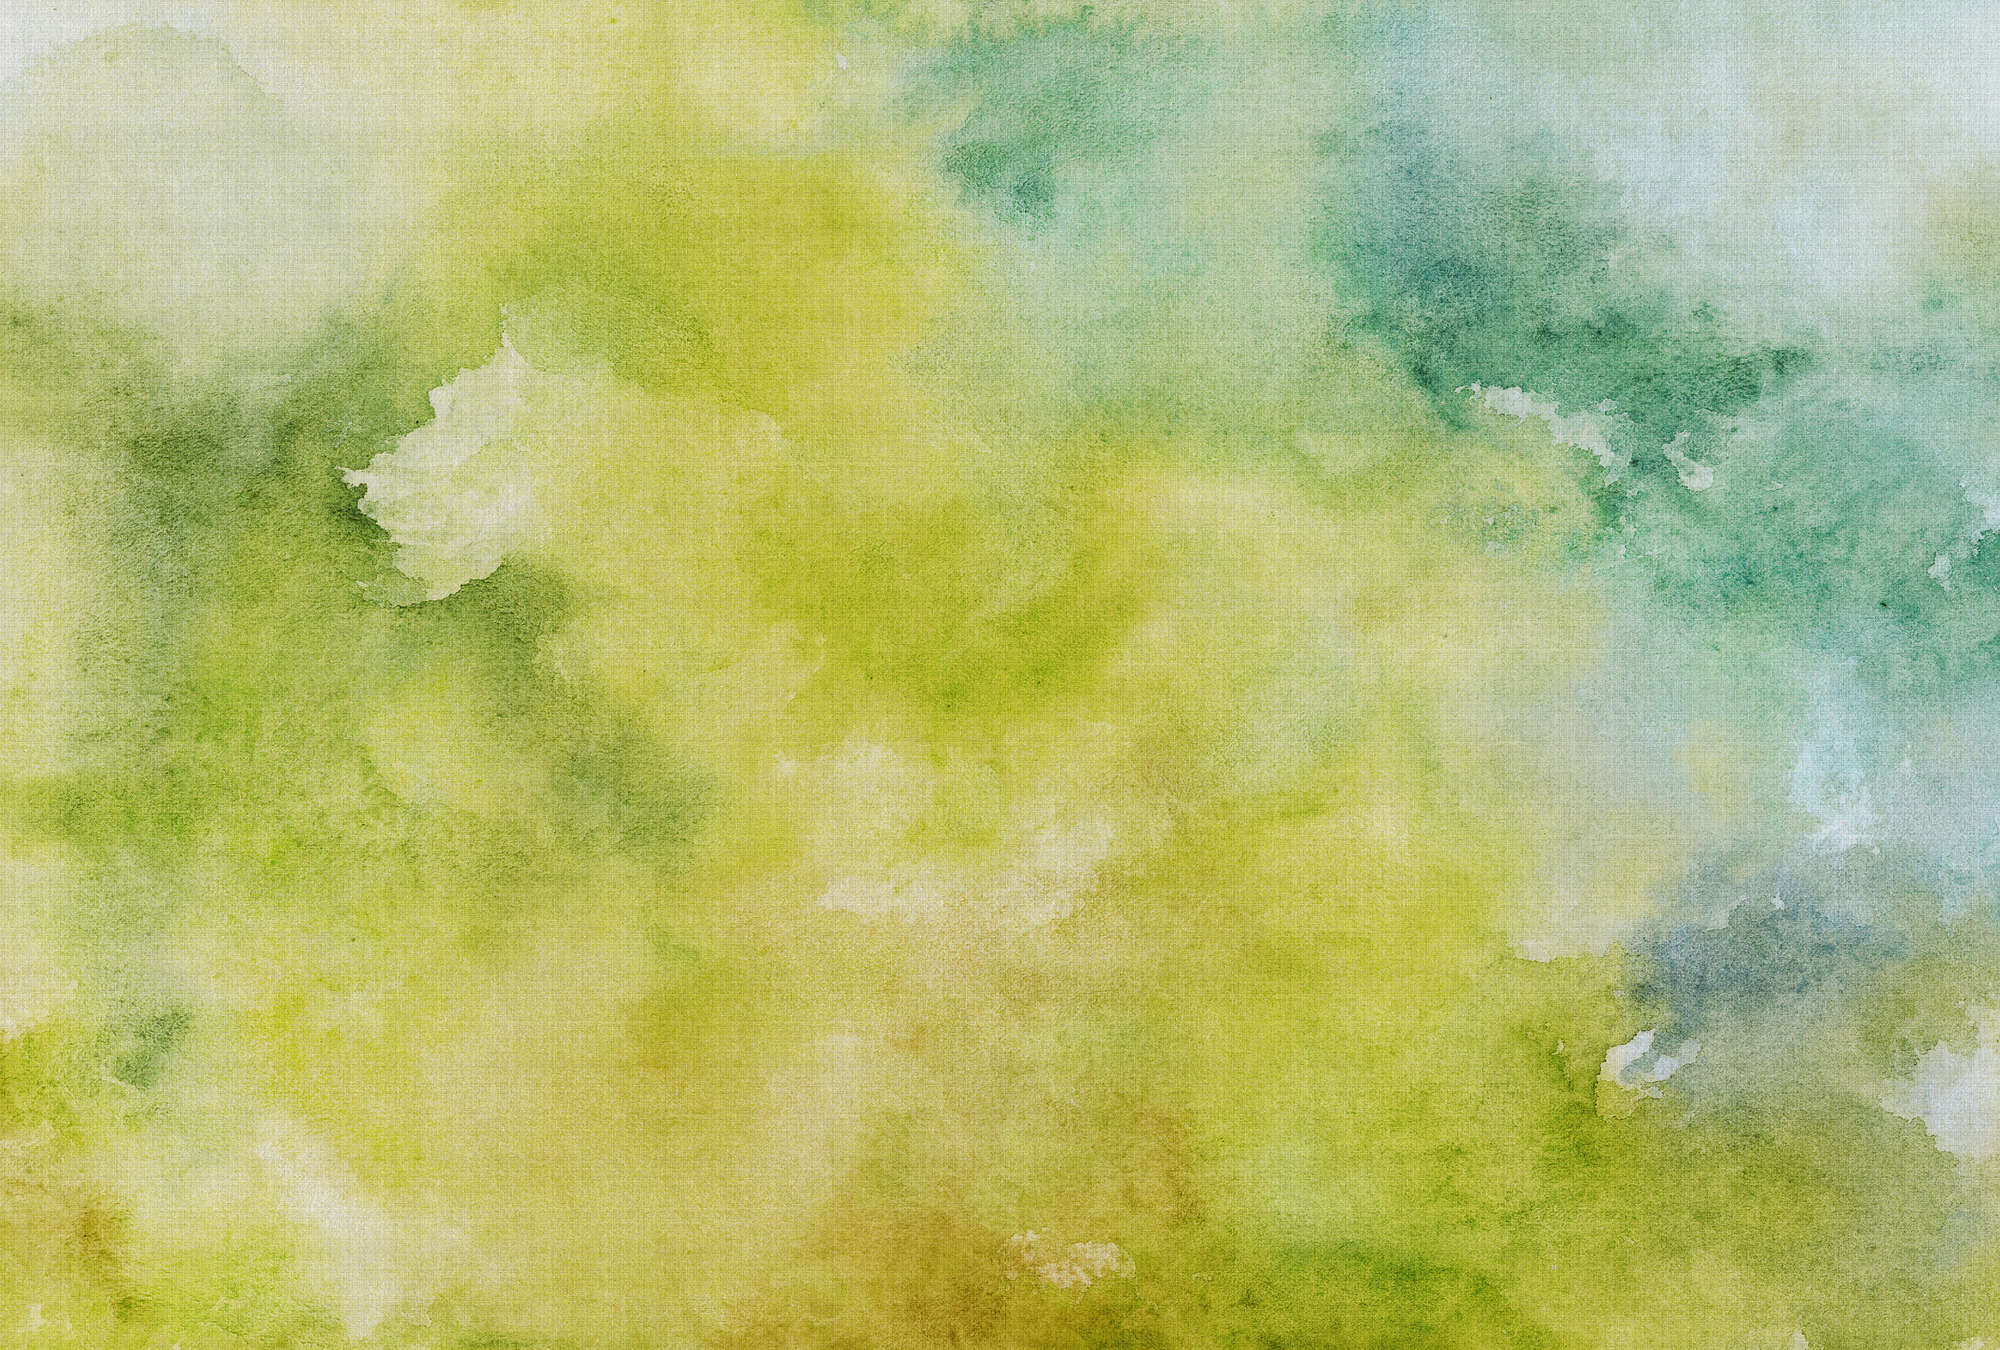             Acuarelas 3 - Motivo de acuarela verde como papel pintado fotográfico en estructura de lino natural - Amarillo, Verde | estructura no tejida
        